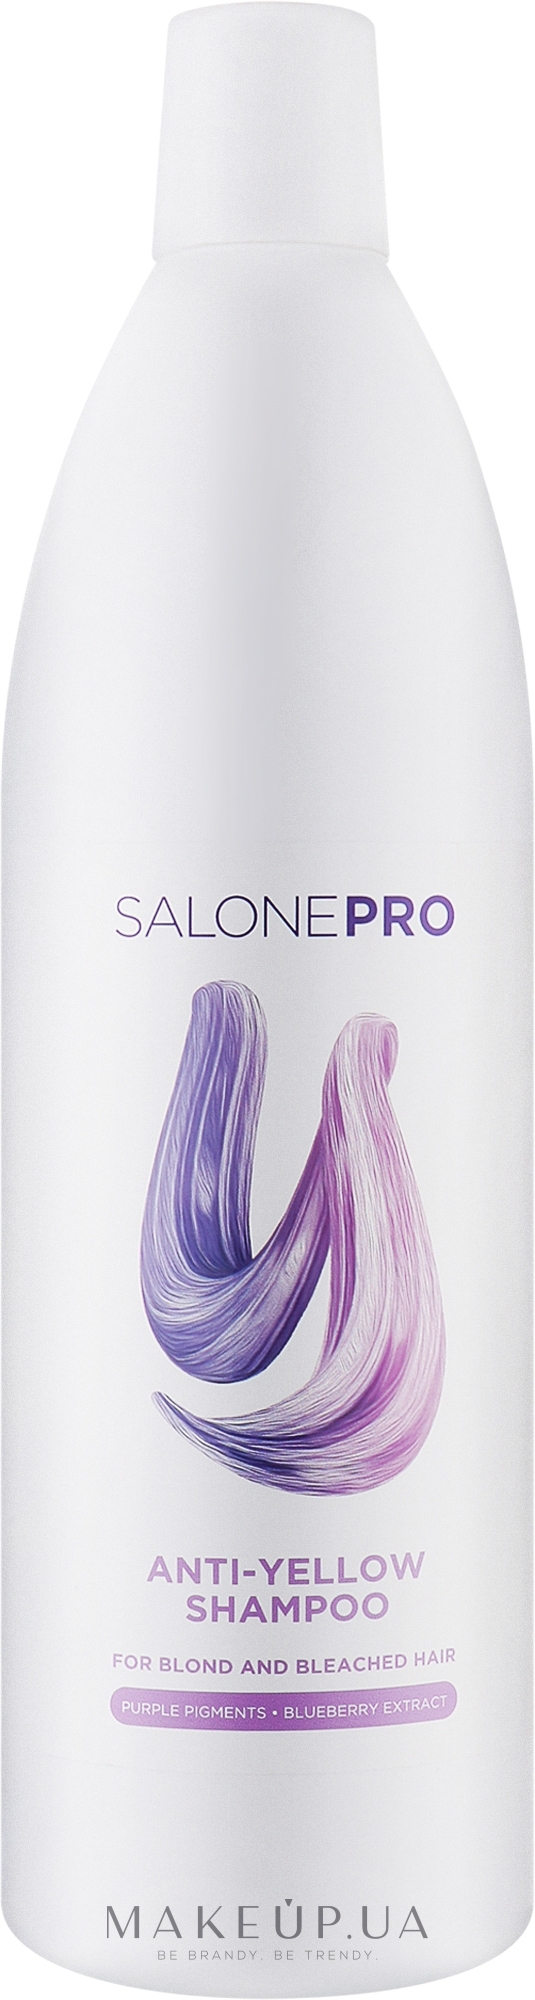 Шампунь против желтизны для светлых и осветленных волос - Unic Salone Pro Shine Anti-& Yellow Shampoo — фото 1000ml